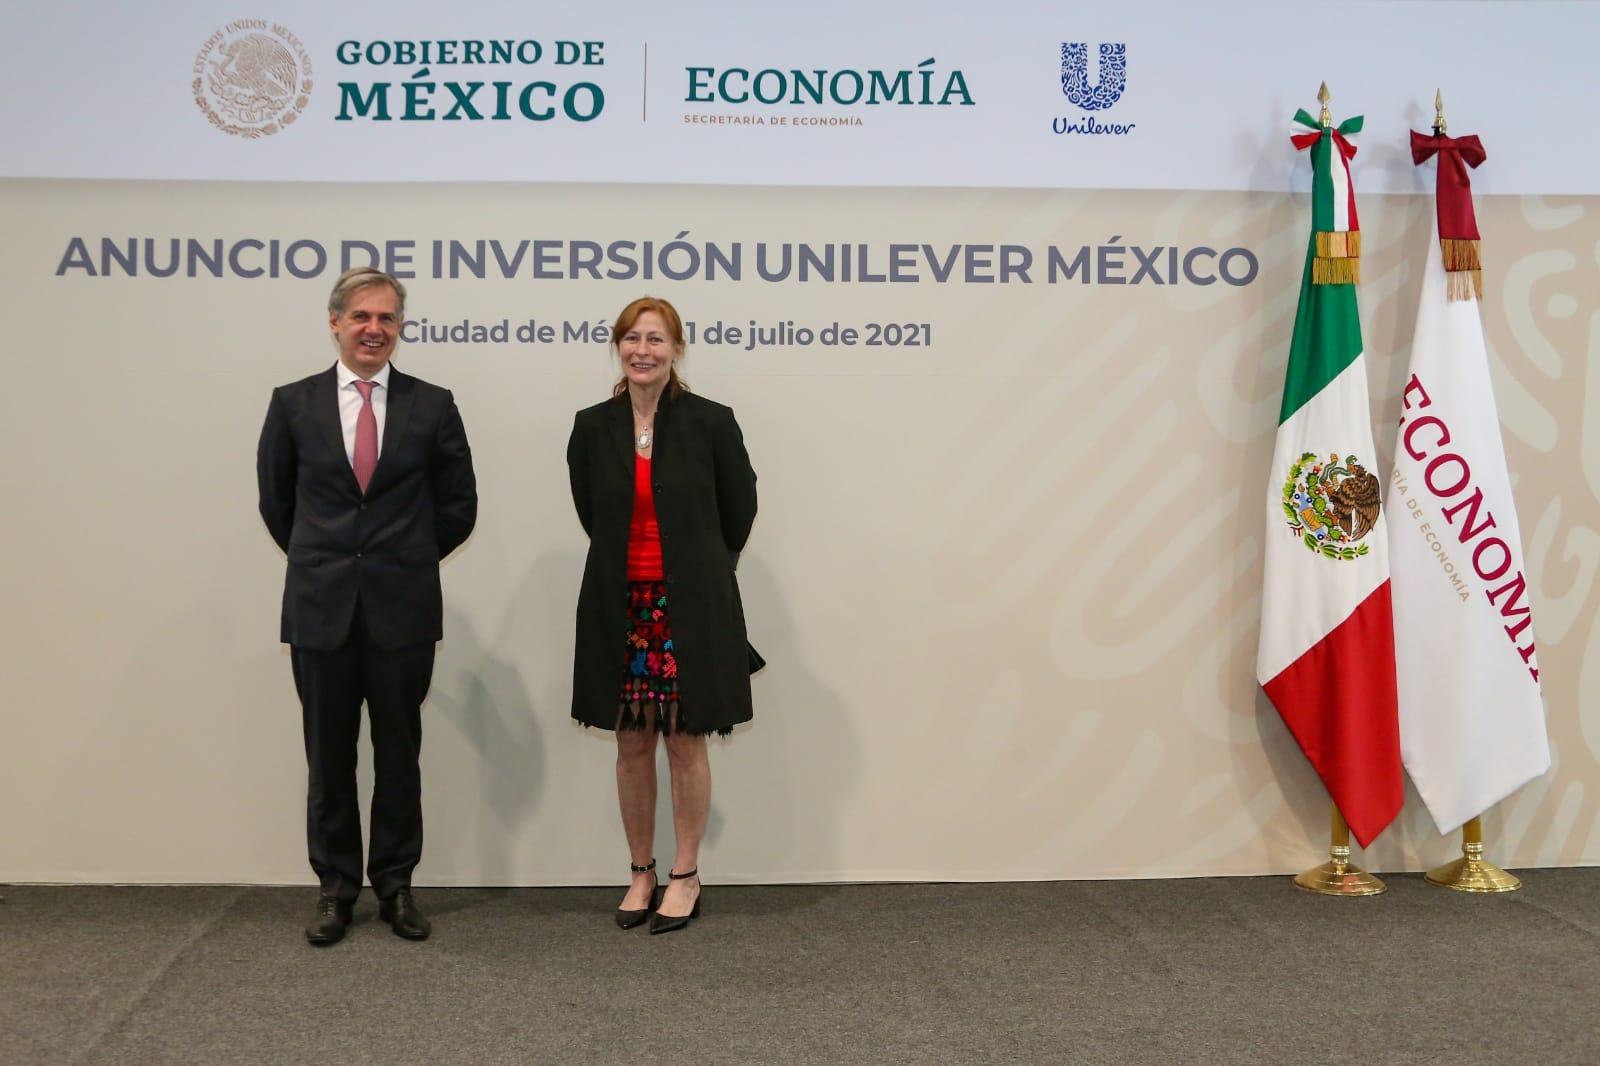 Anuncio de inversión de Unilever en México /@SE_mx